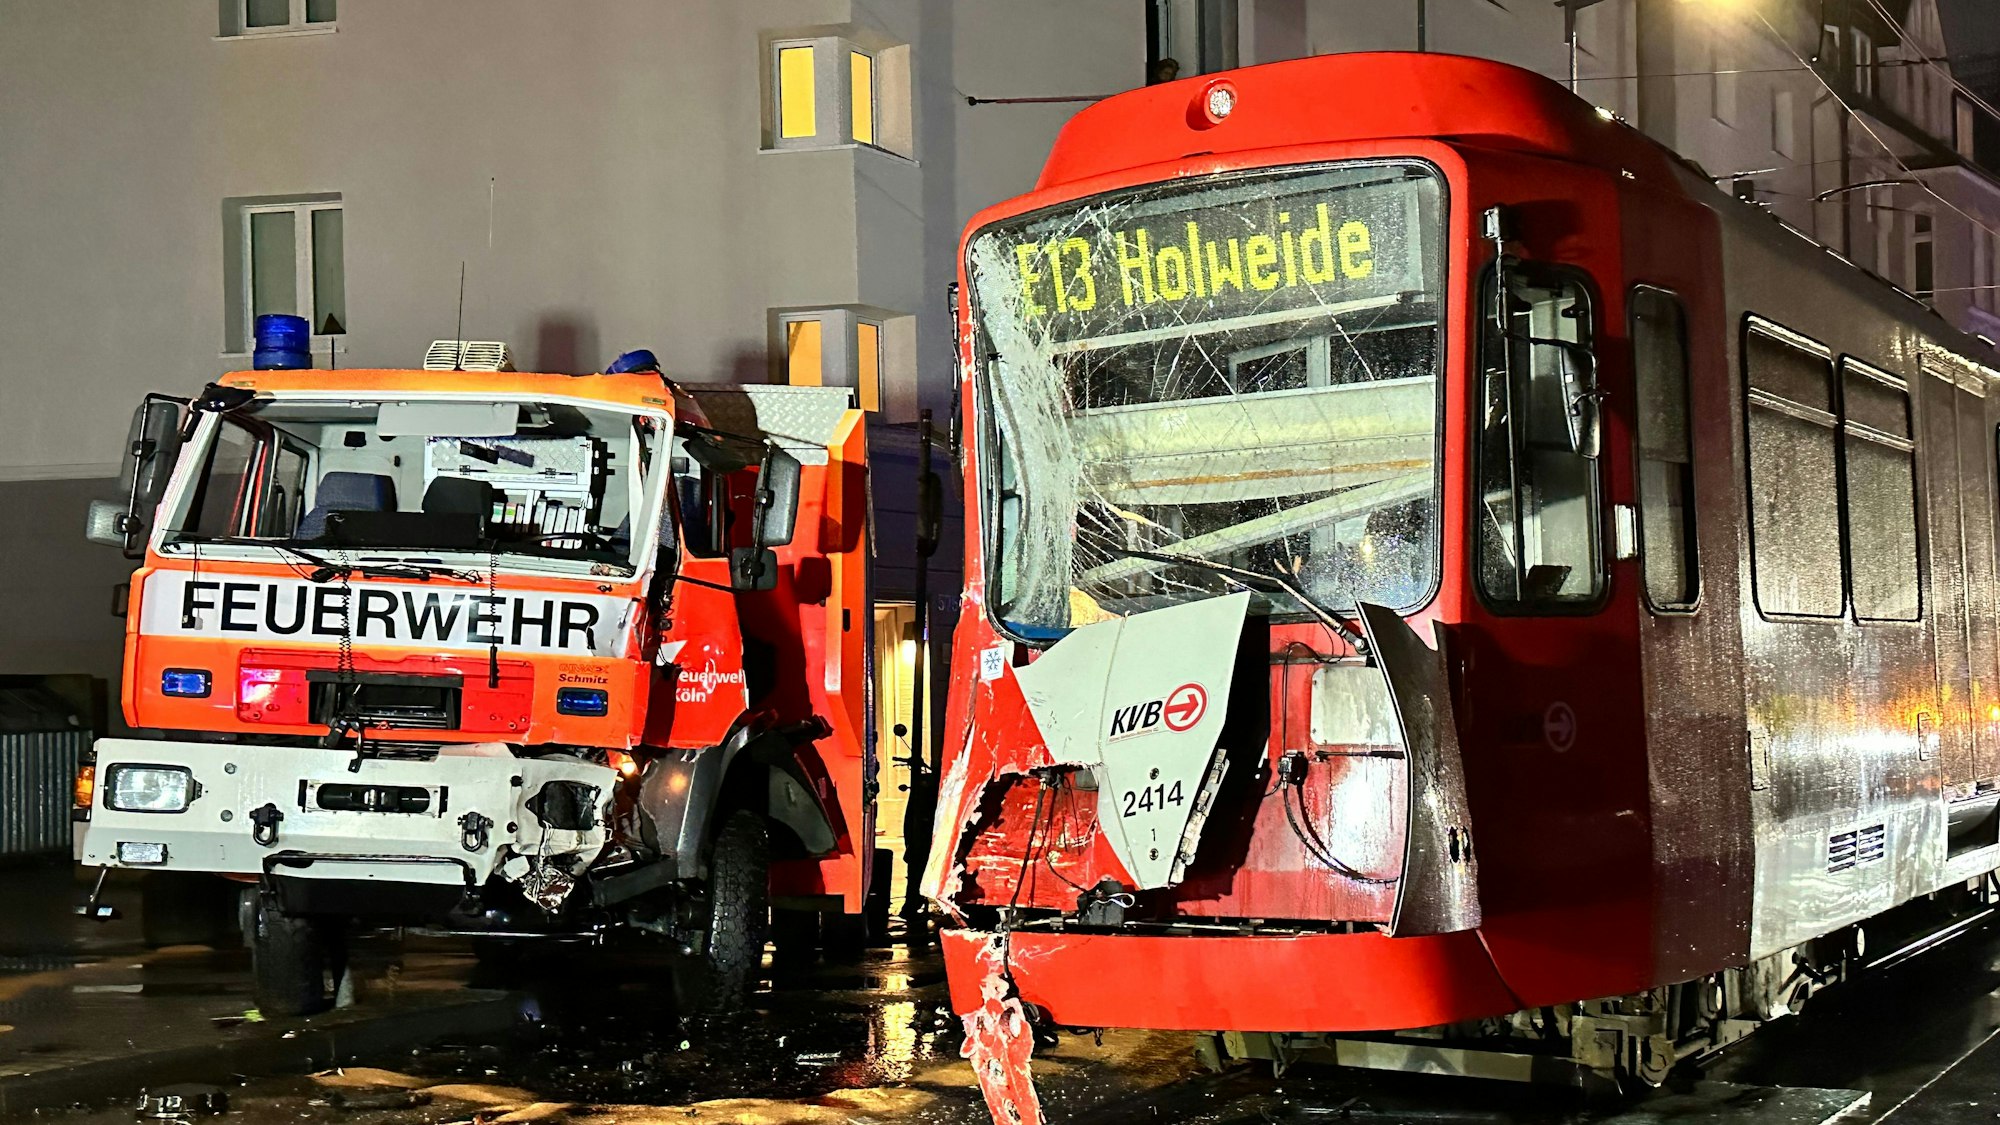 Der Feuerwehrwagen und die KVB-Stadtbahn sind nach dem Unfall nicht mehr fahrtüchtig.